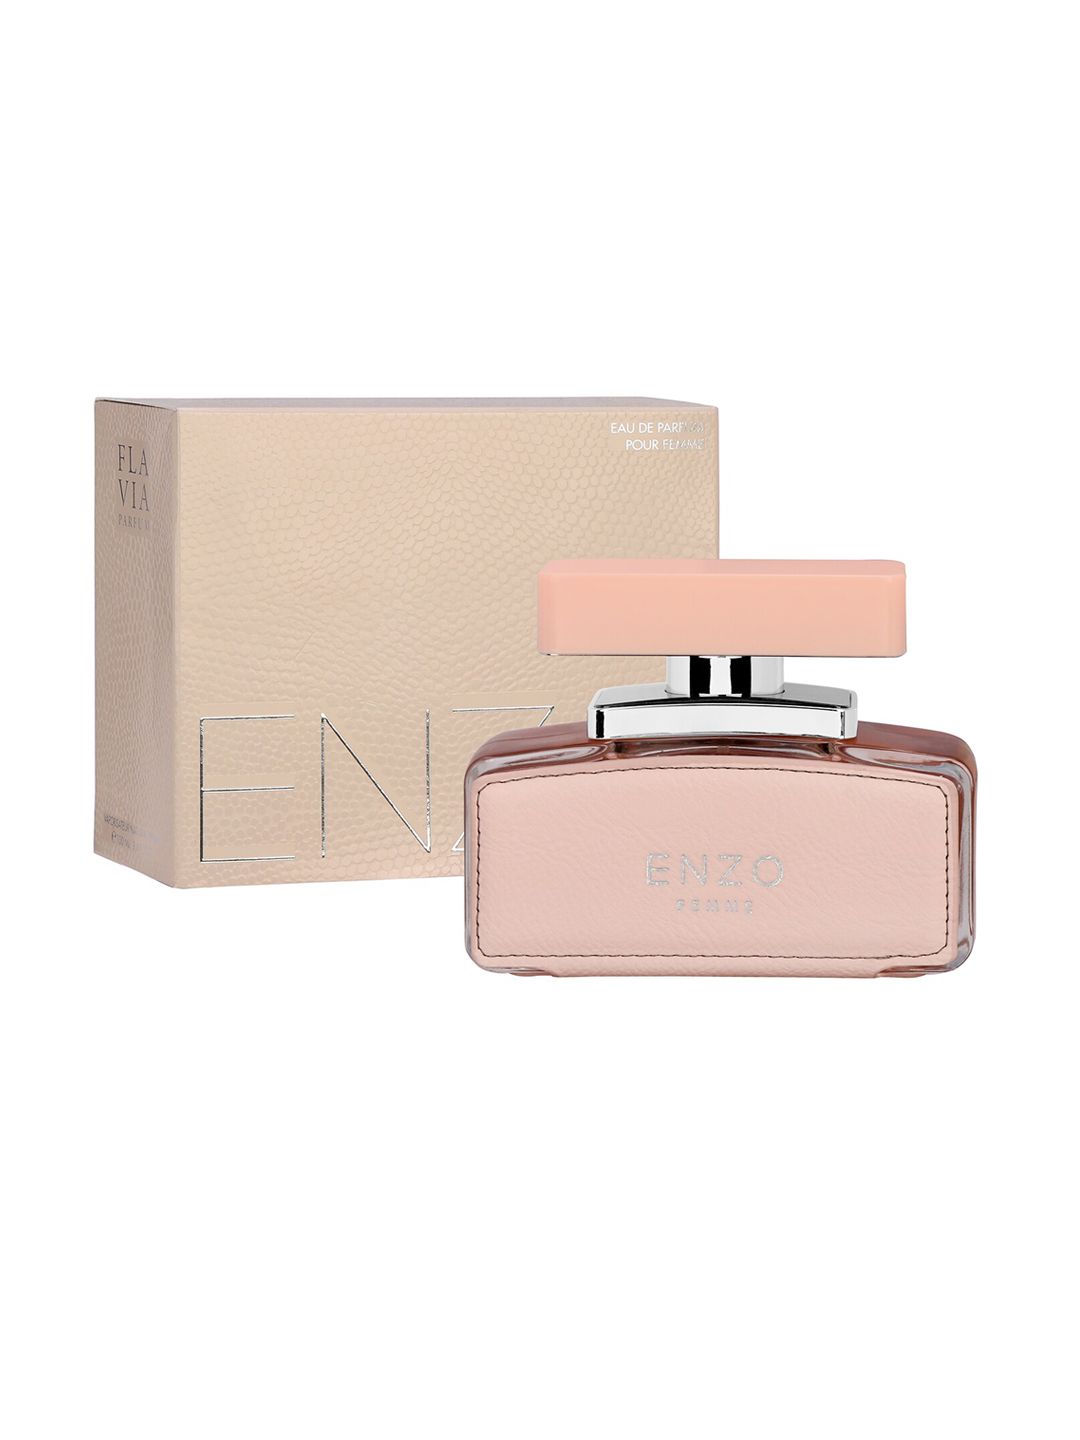 FLAVIA Women Enzo Femme Eau De Parfum - 100ML Price in India